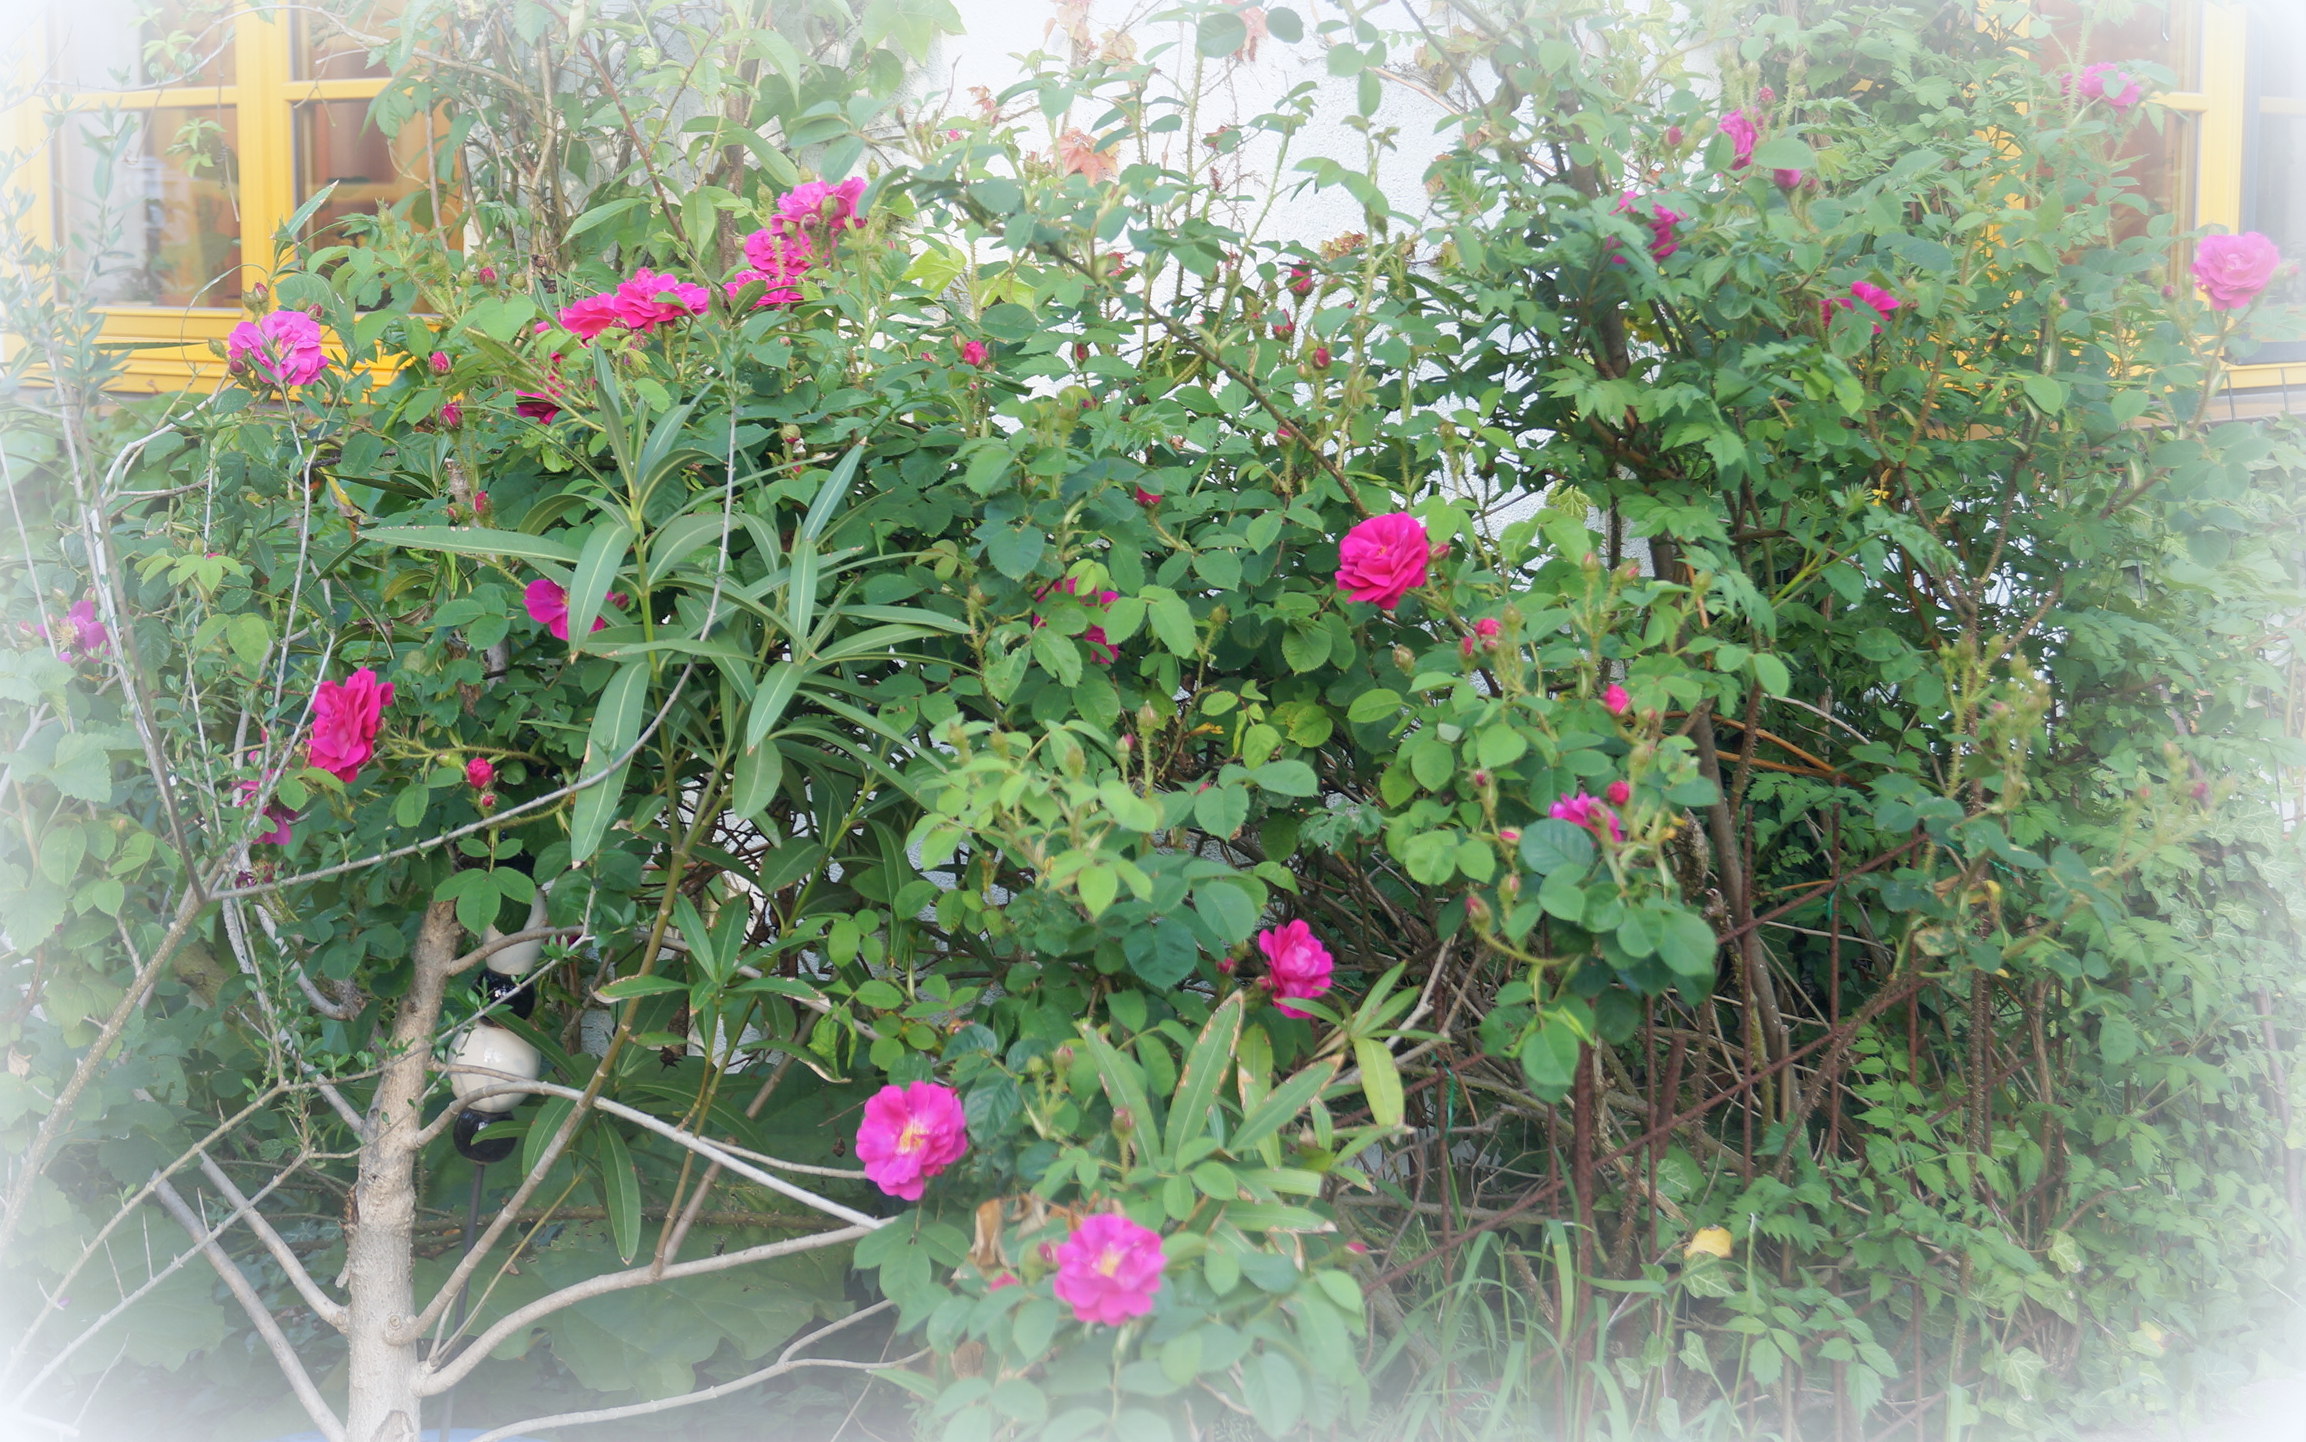 Der Garten verströmt Rosenparfüm